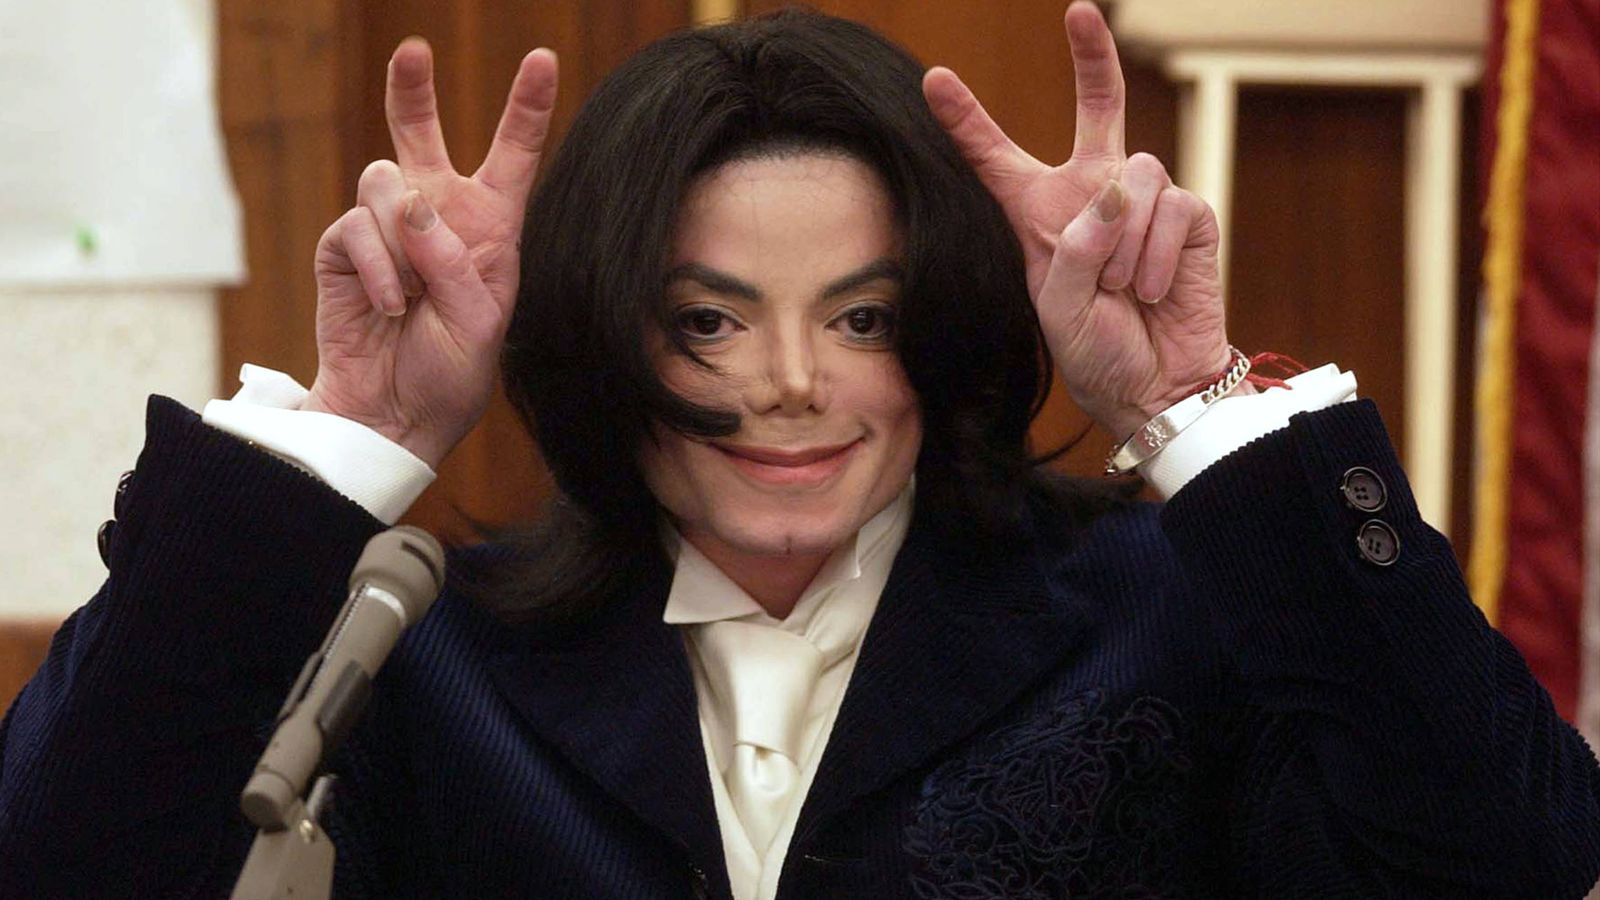 Foto: Michael Jackson testificando en un juicio. (Getty)